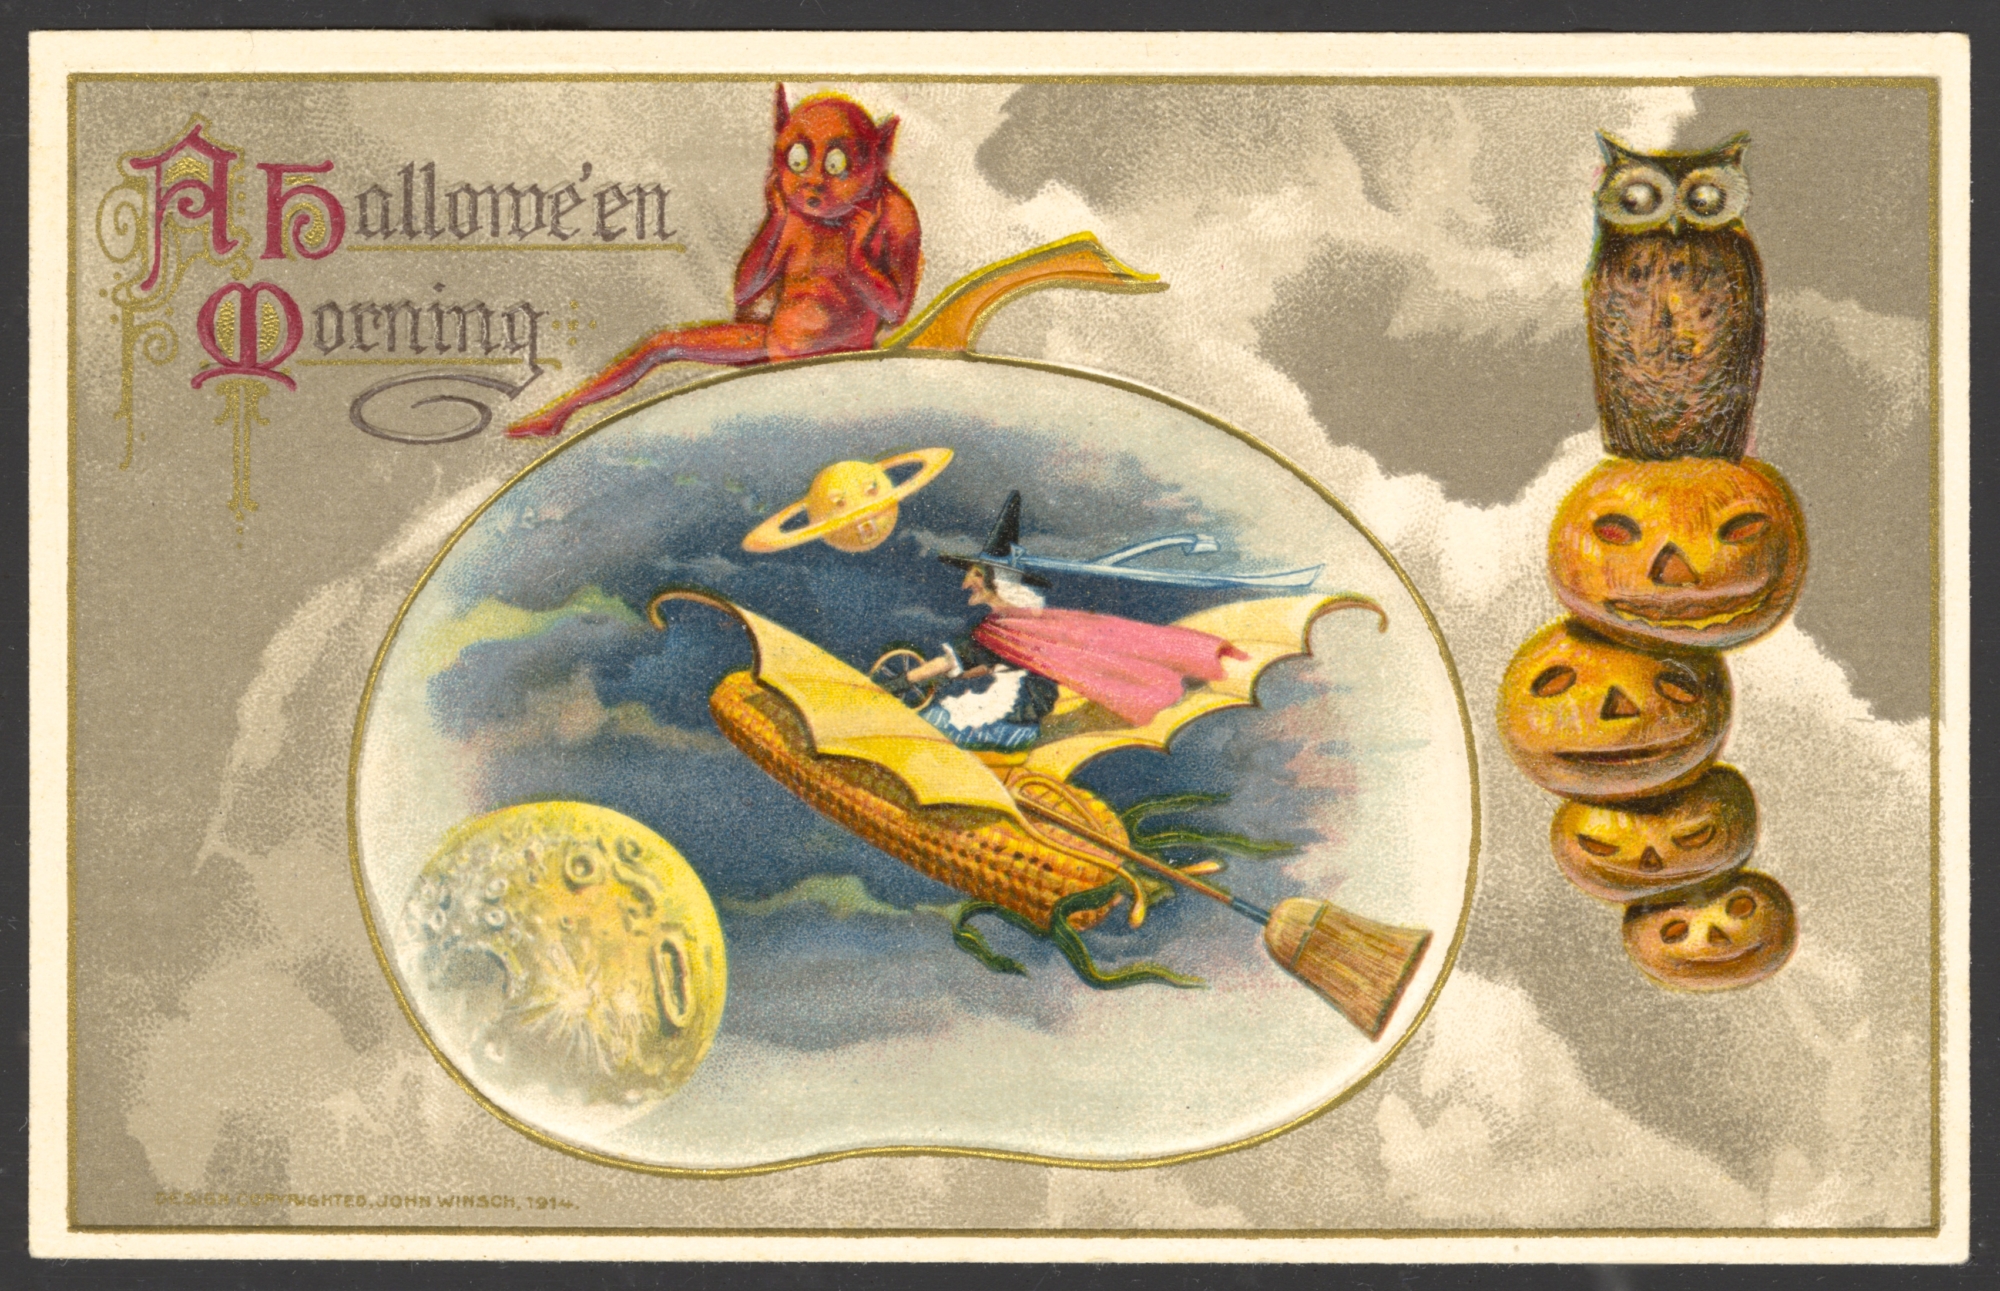 Winsch Halloween Postcard copyright 1914